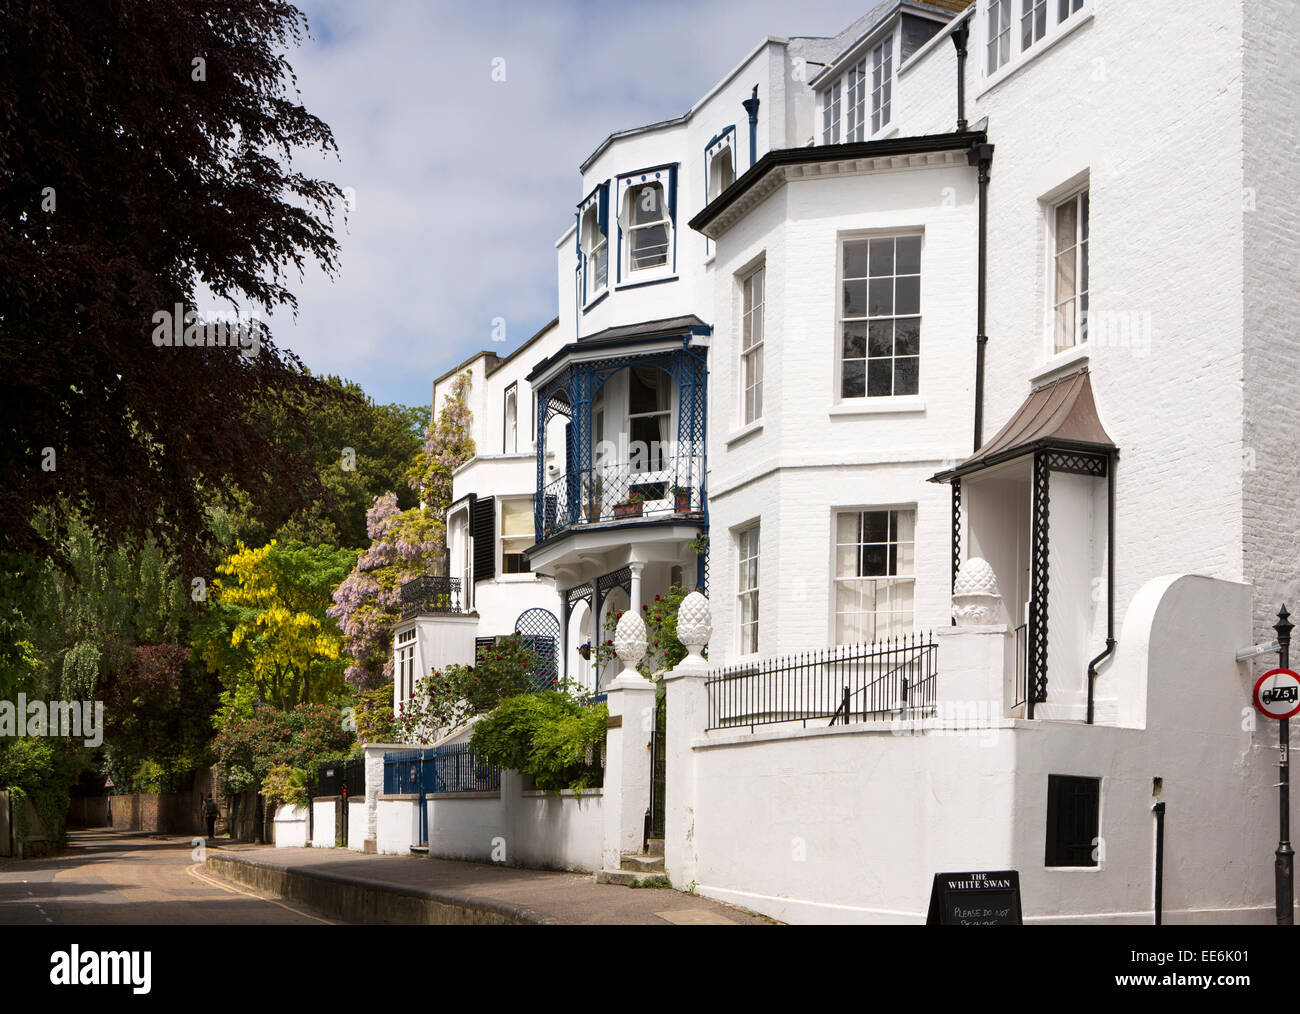 UK, London, Twickenham, Riverside, Aubrey House in middle of riverside terrace Stock Photo